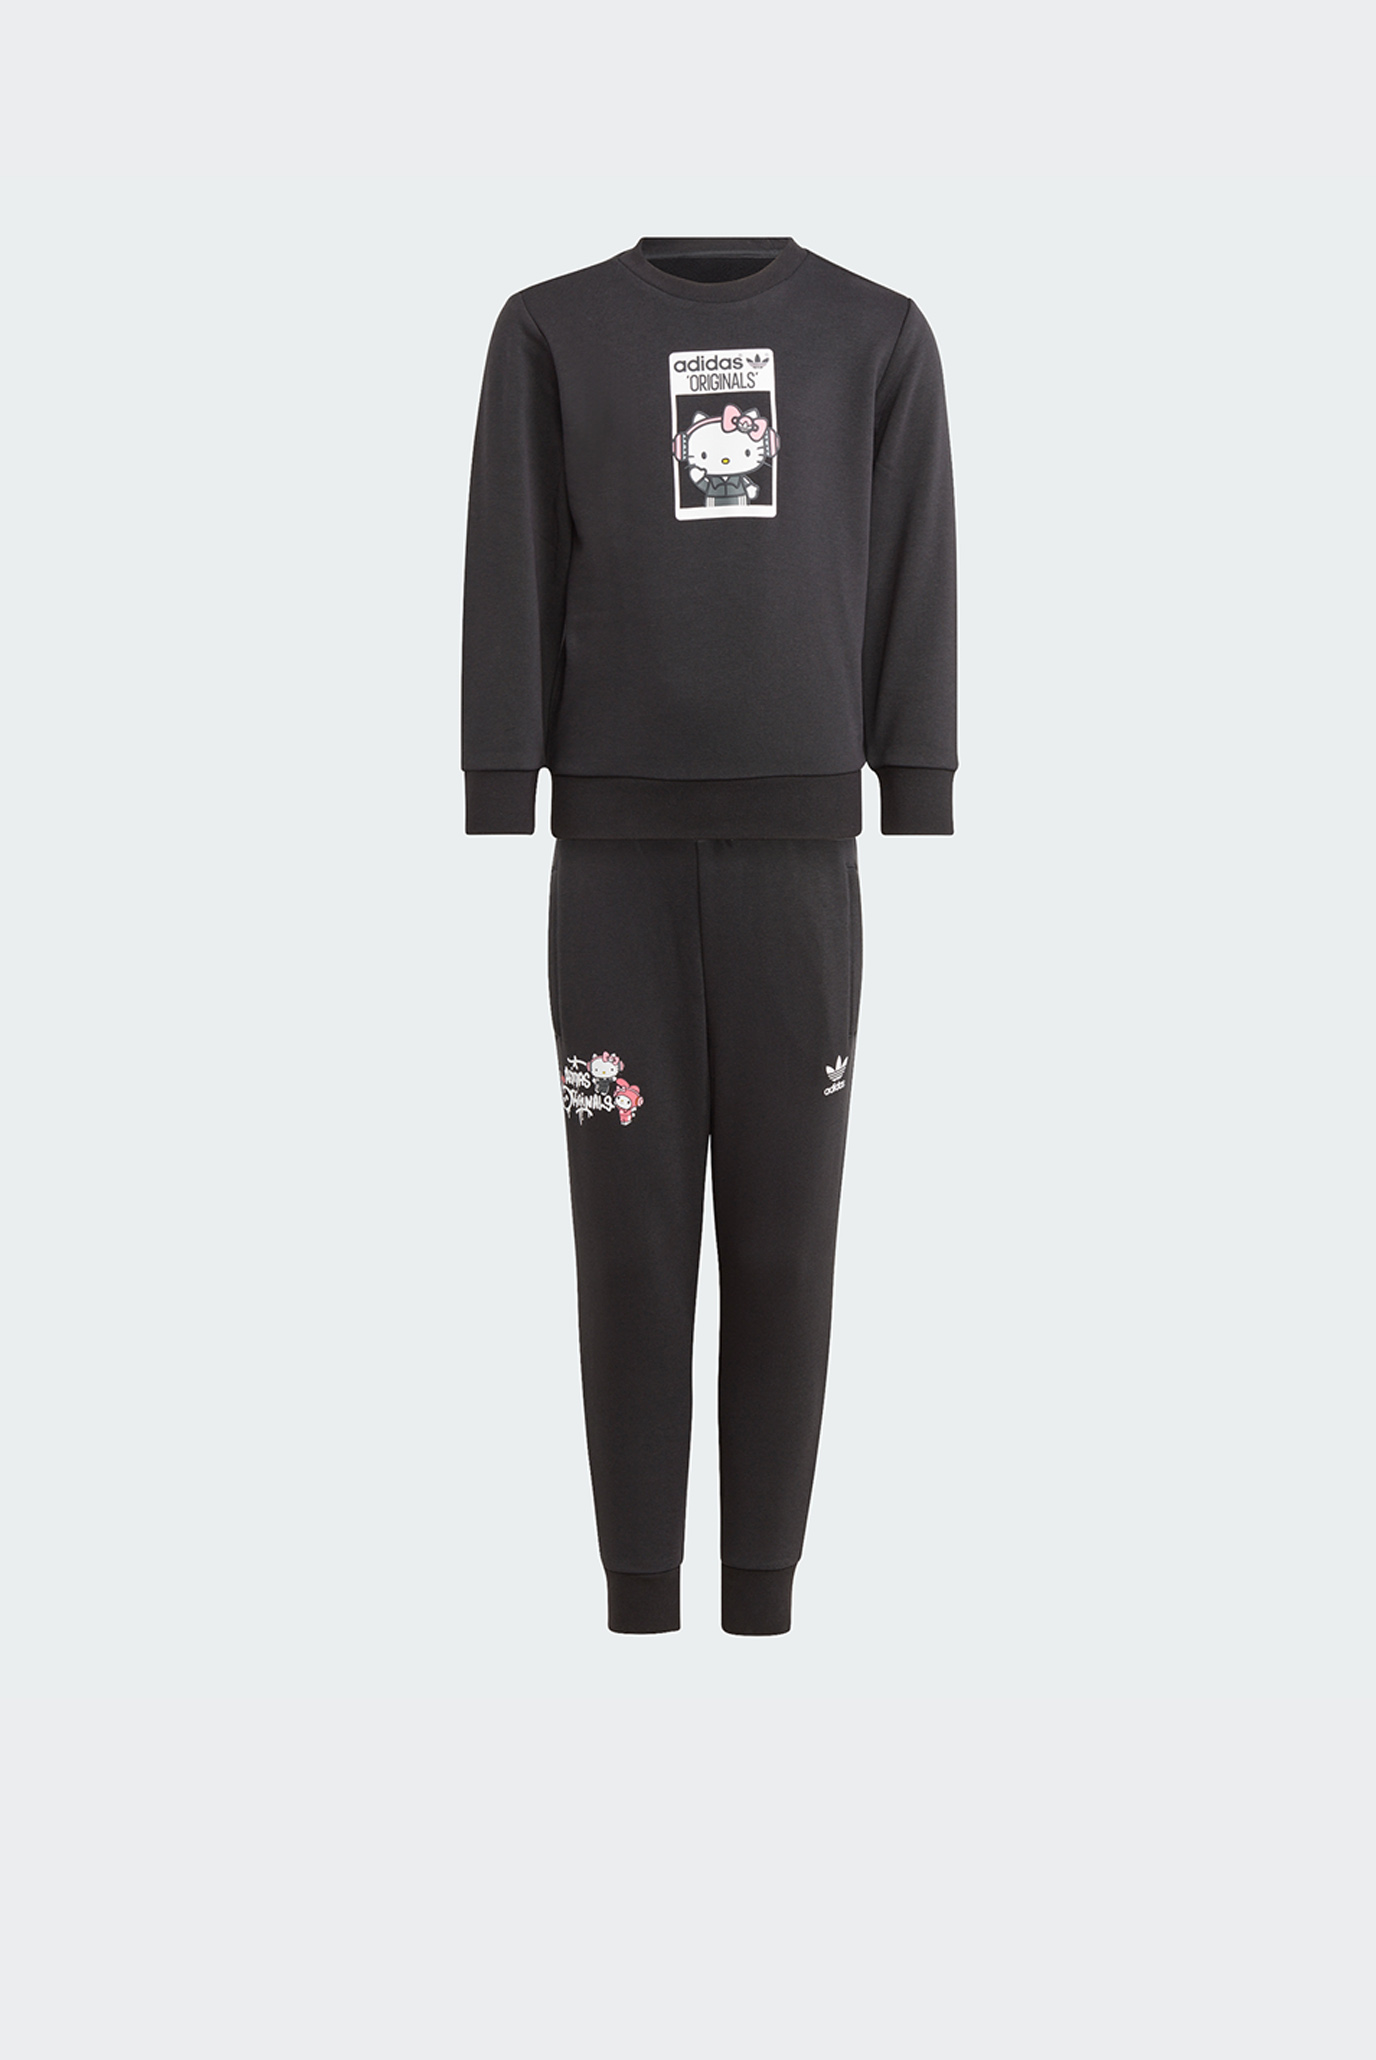 Дитячий чорний спортивний костюм (світшот, штани) adidas Originals x Hello Kitty 1